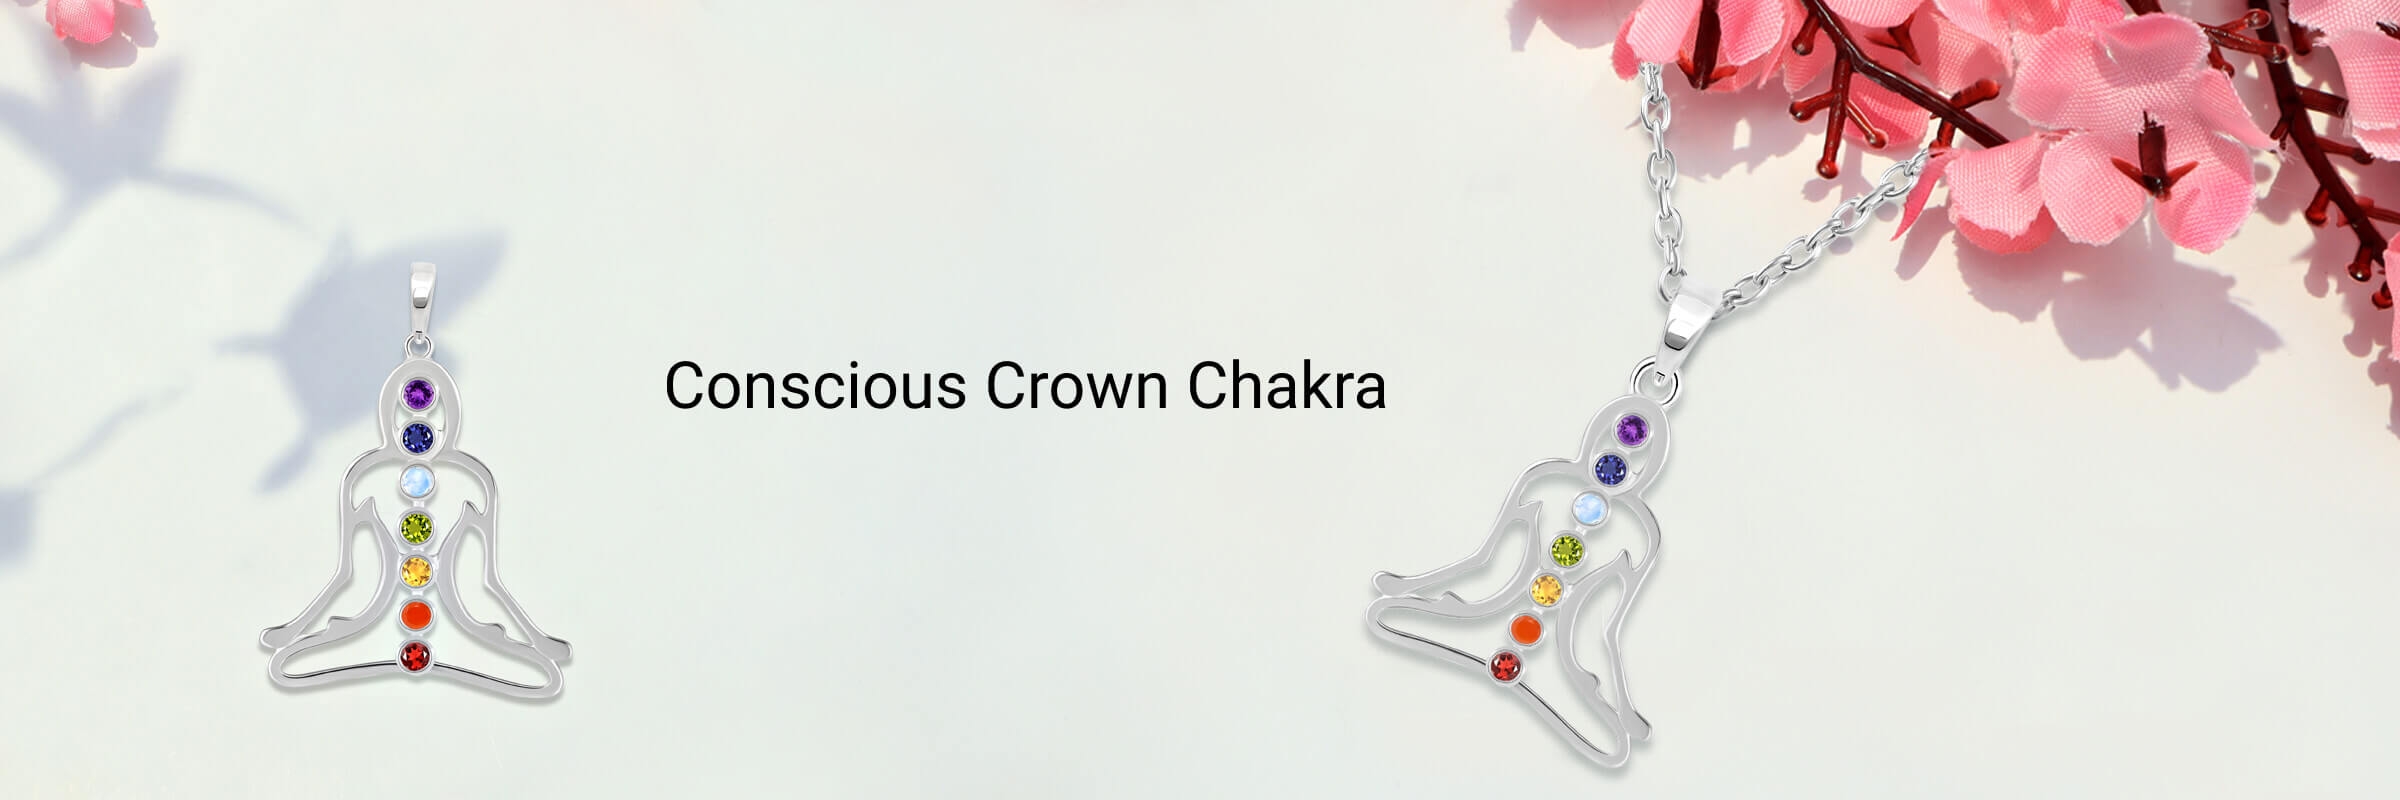 Crown Chakra